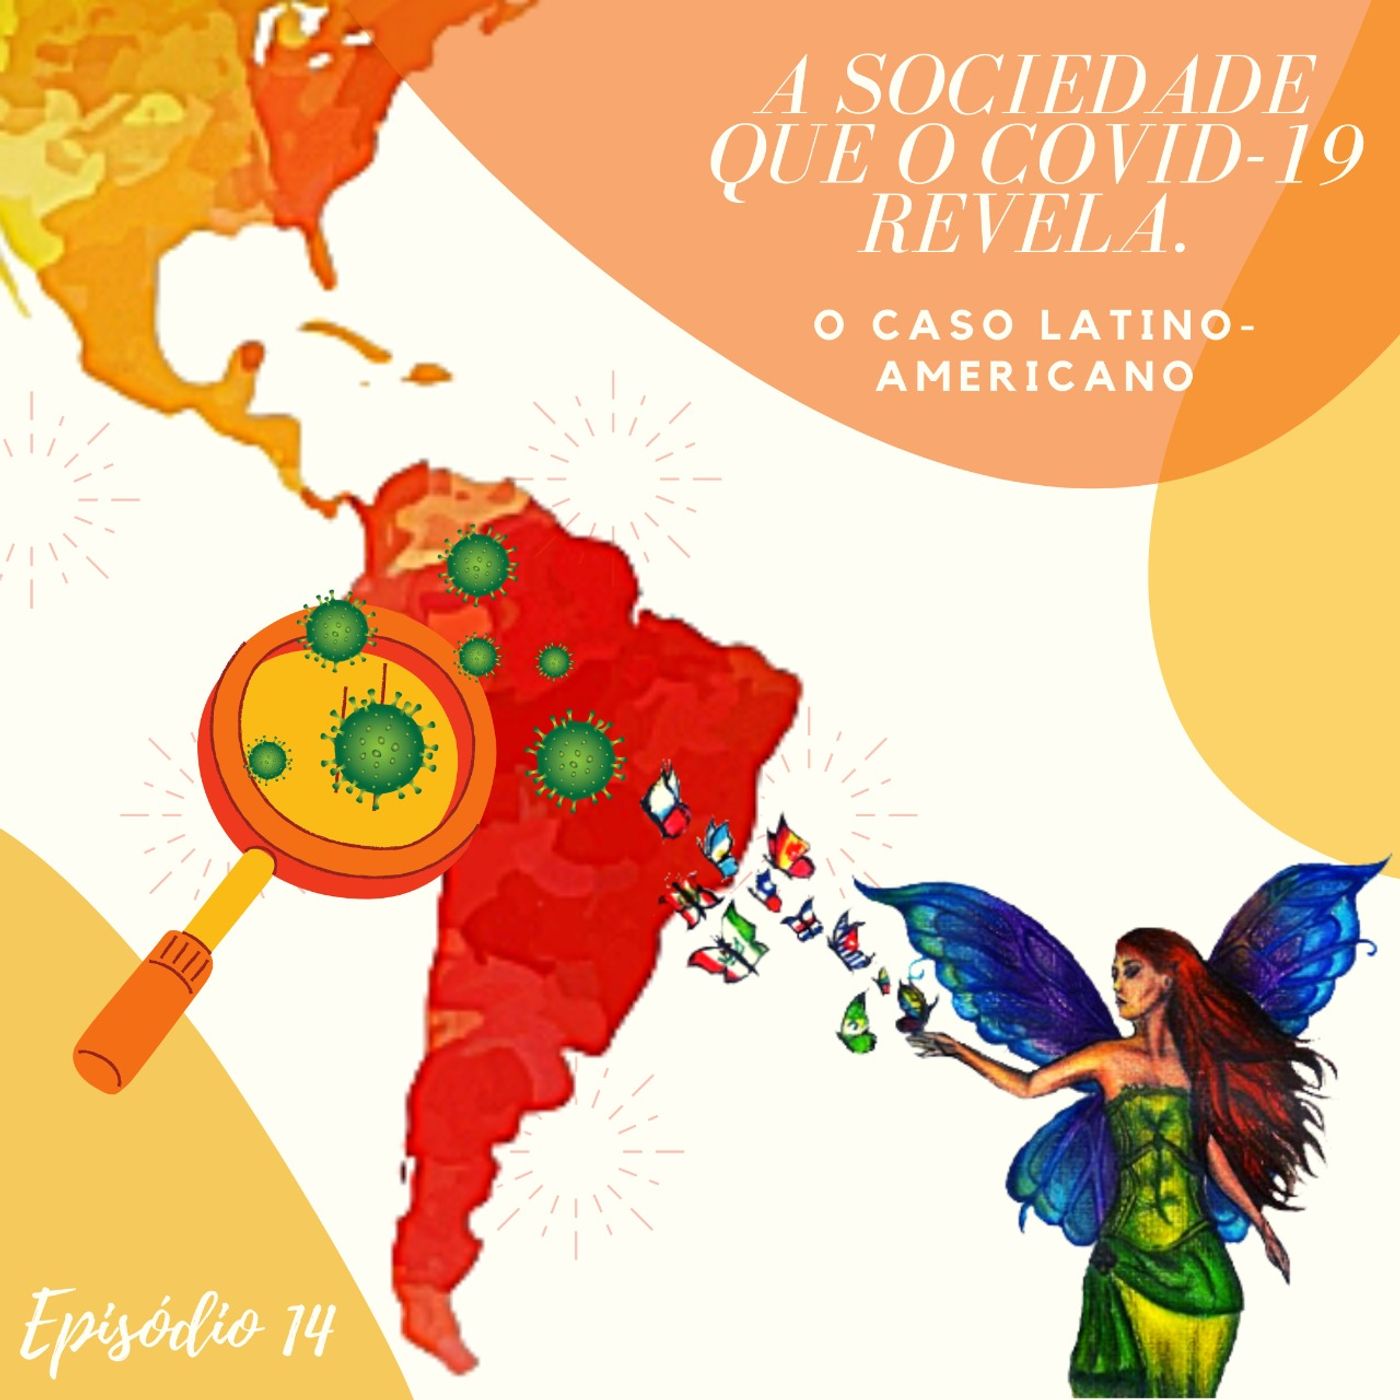 Episodio 14 -A Sociedade que o Covid-19 revela: O caso Latino-Americano